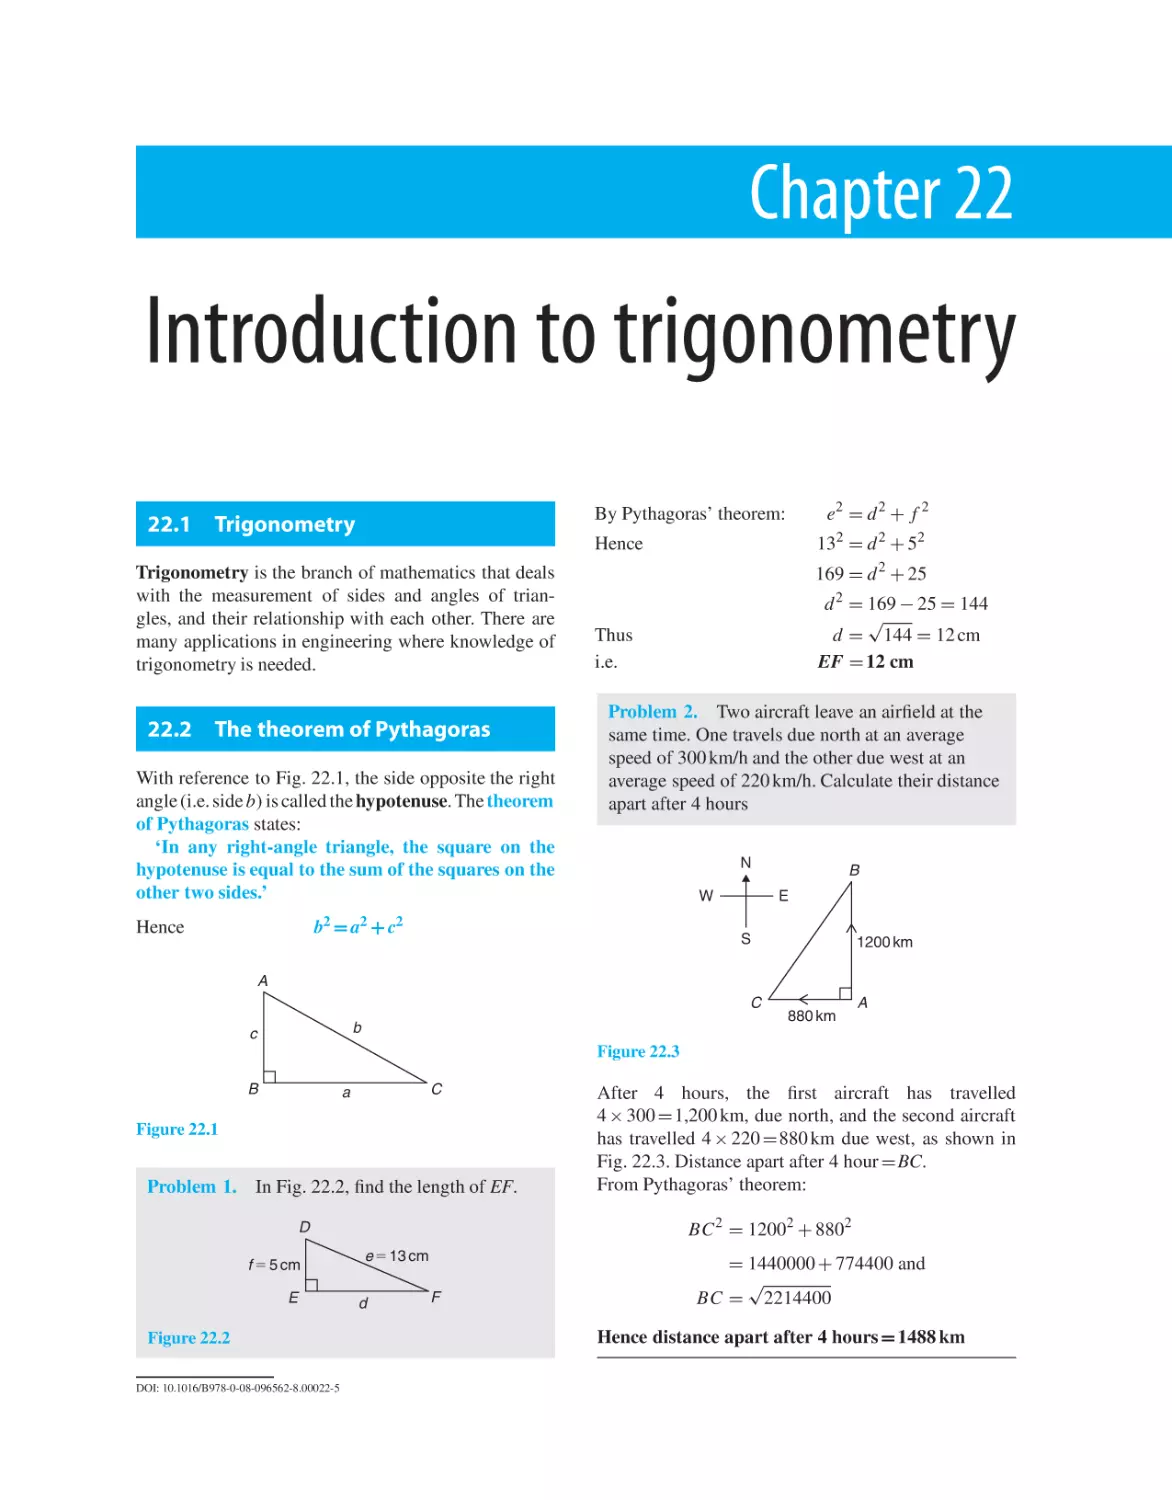 Chapter 22. Introduction to trigonometry
22.1 Trigonometry
22.2 The theorem of Pythagoras